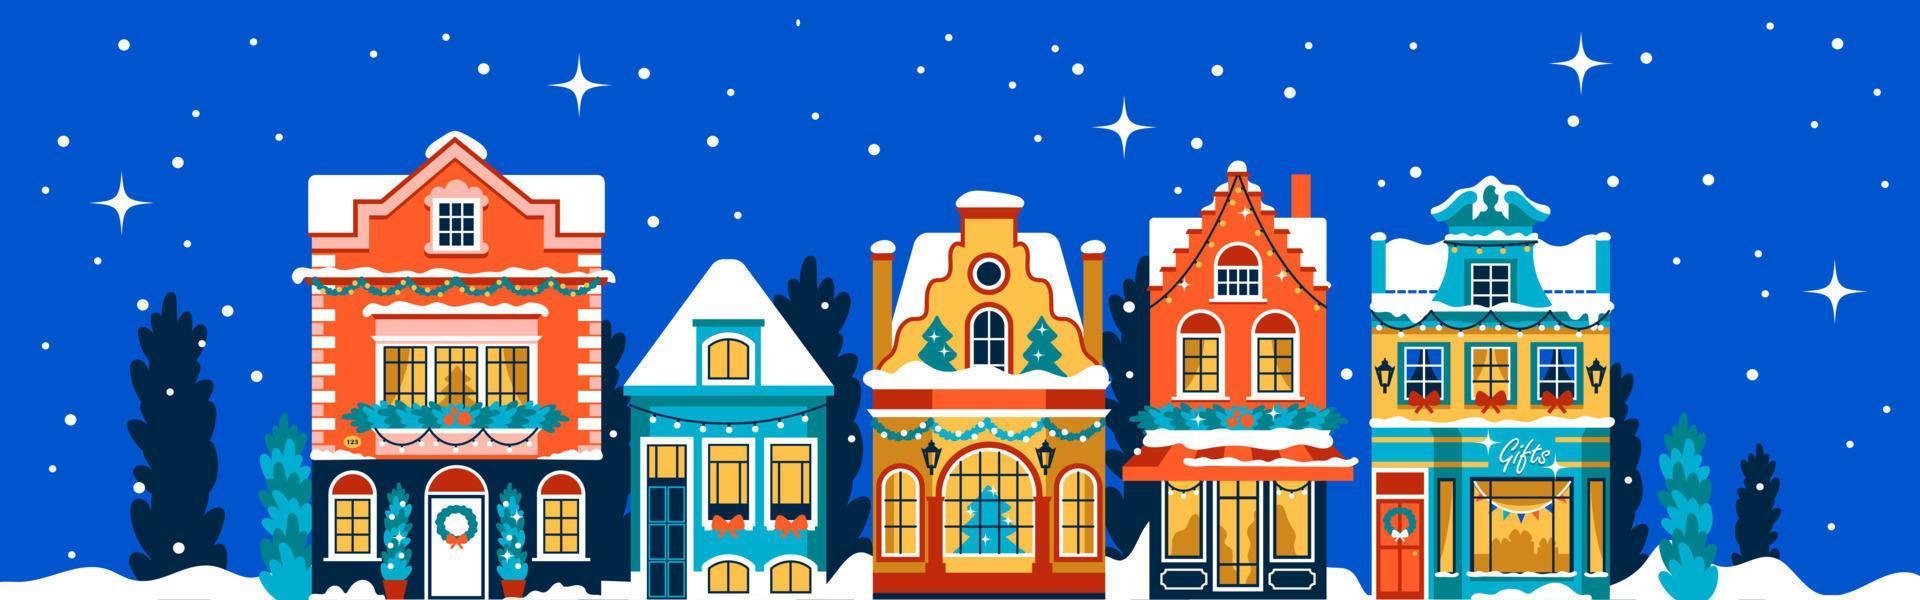 bannière de noël avec des maisons décorées de couleurs vives avec des guirlandes. façades plates avec sapins de noël et neige vecteur